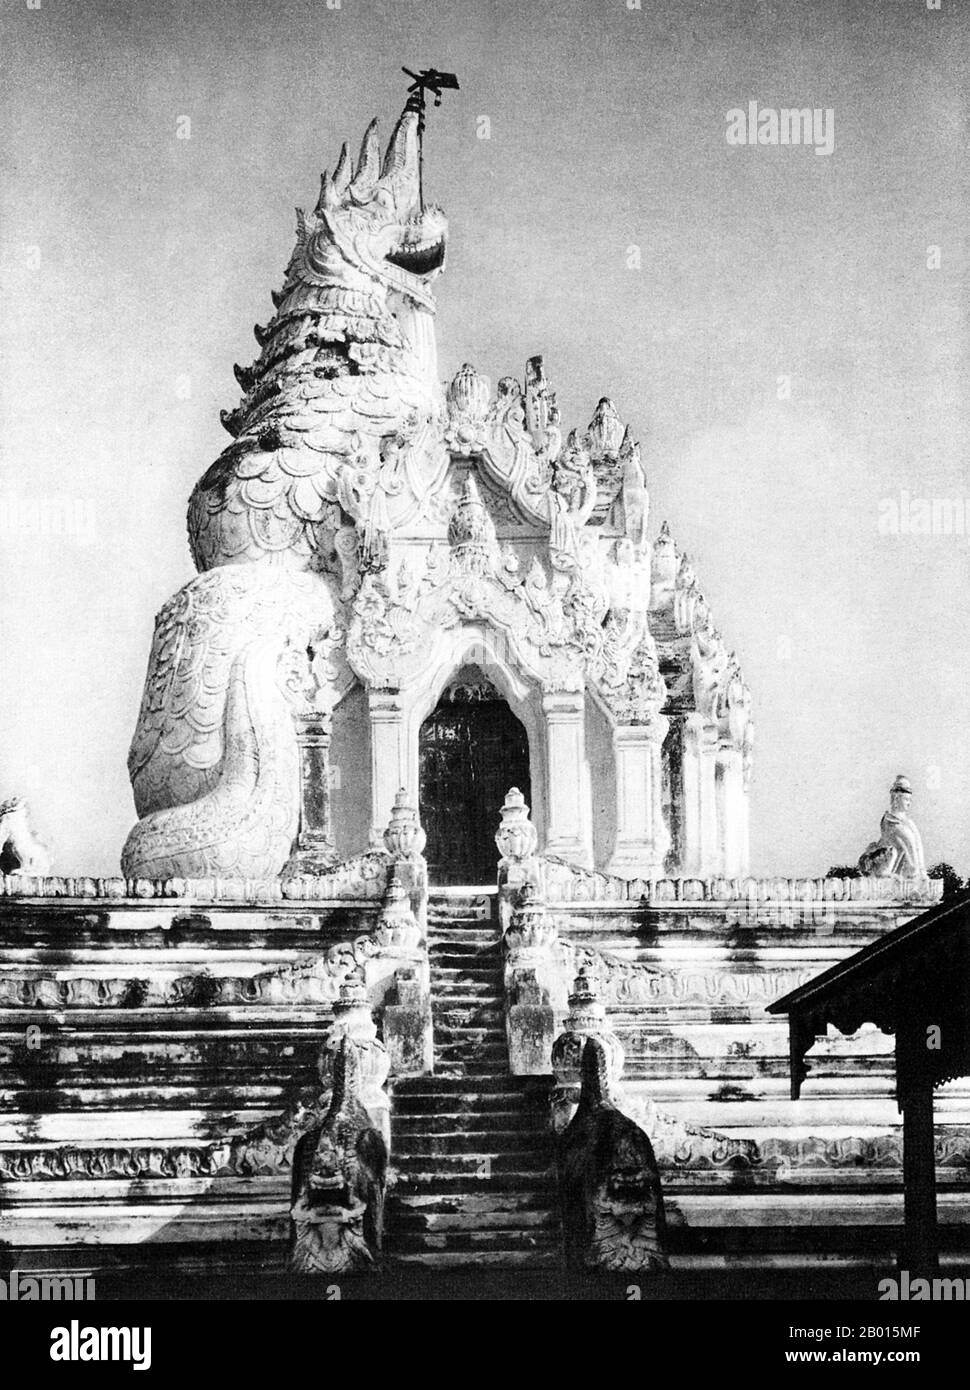 Birmanie/Myanmar: La Pagode Ava en forme de dragon, vers les années 1920. AVA était la capitale de la Birmanie de 1364 à 1841 et fut fondée par le roi Thadominbya sur une île artificielle au confluent de l'Irrawaddy et du Myitnge créé en creusant un canal reliant les deux rivières. Avant cela, Sagaing était la capitale, mais après que Sagaing est tombé au Shan, le tribunal a traversé la rivière pour se rendre à Ava. La culture de Pagan a été ravivée et un grand âge de la littérature birmane a suivi. Le royaume n'avait toutefois pas de frontières facilement défendables et a été dépassé par le Shan en 1527. Banque D'Images